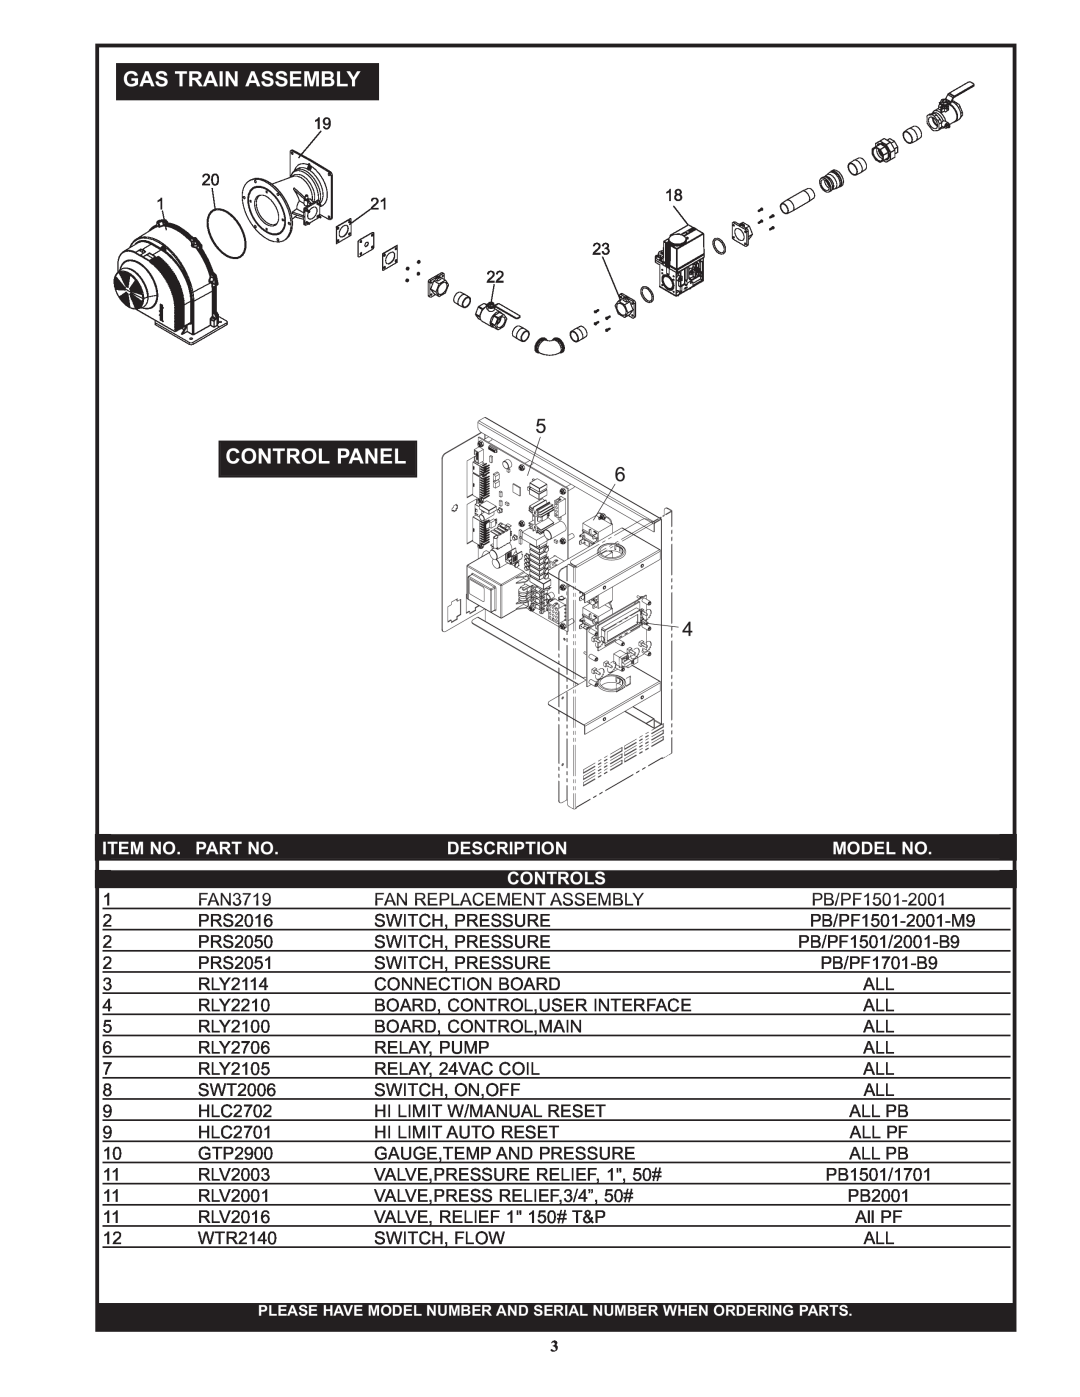 Lochinvar PB/PF 2001, PB/PF 1701 manual Item No. Part No, Description, Model No, Controls, Gas Train Assembly Control Panel 